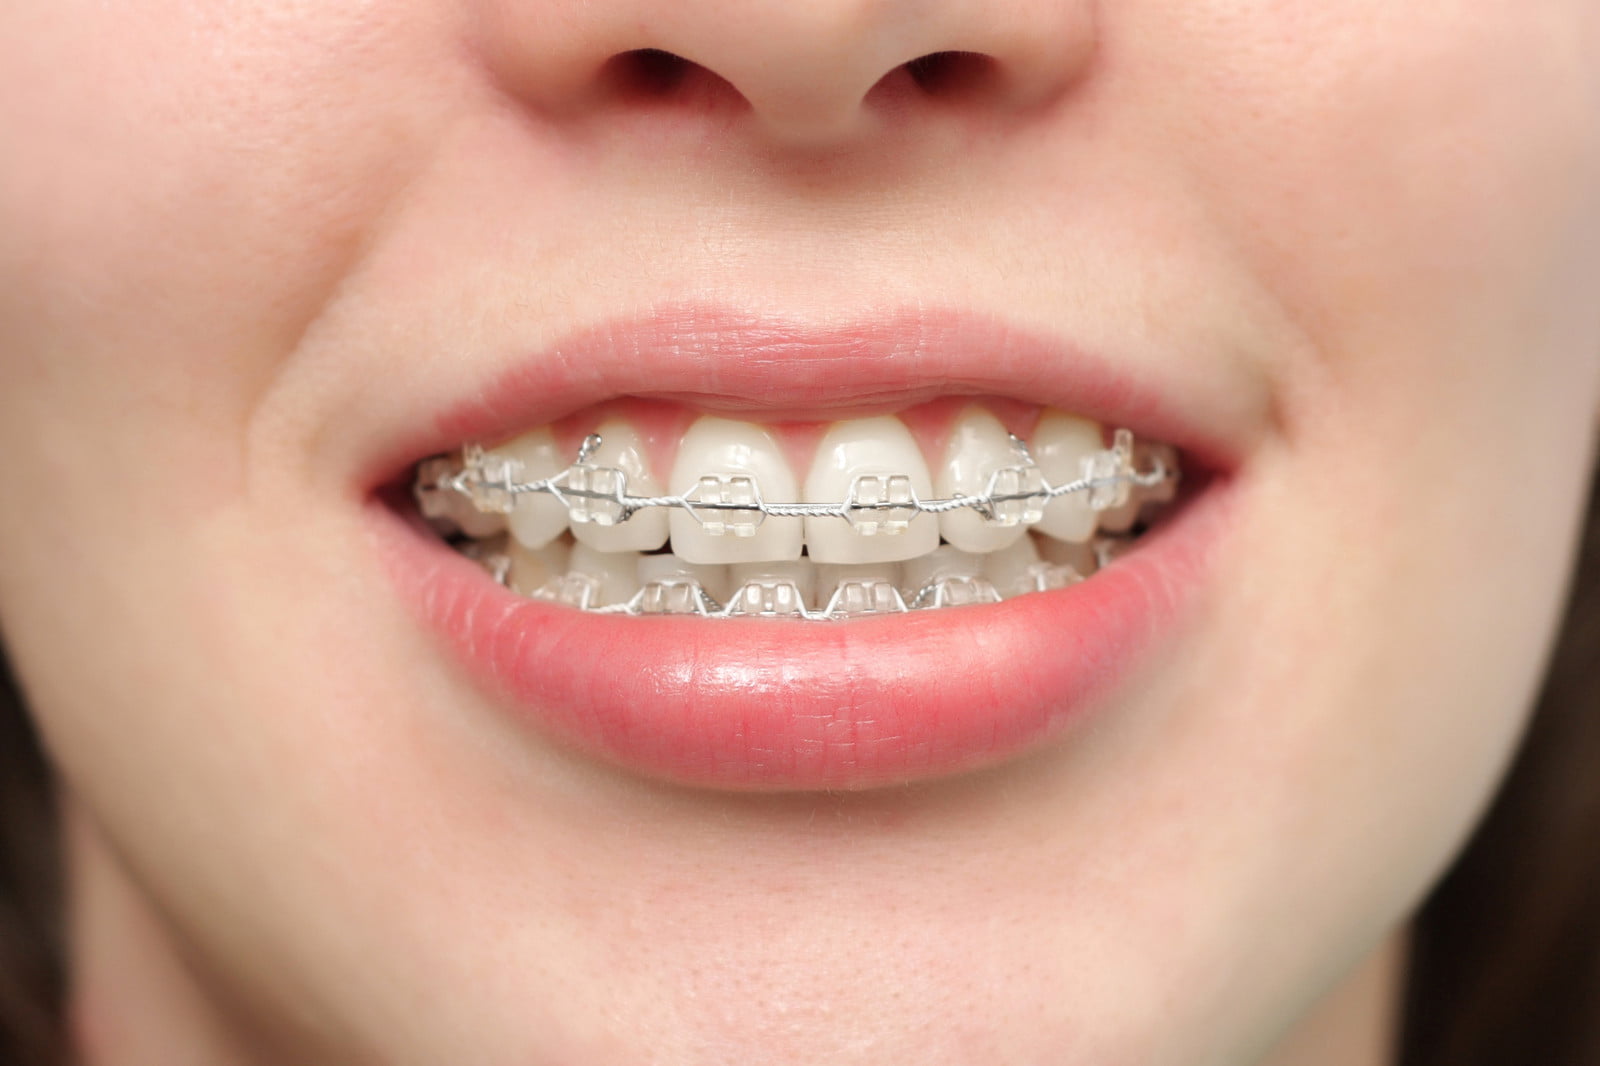 Lực mắc cài khá nhỏ so với kết cấu vững chắc của răng, xương hàm